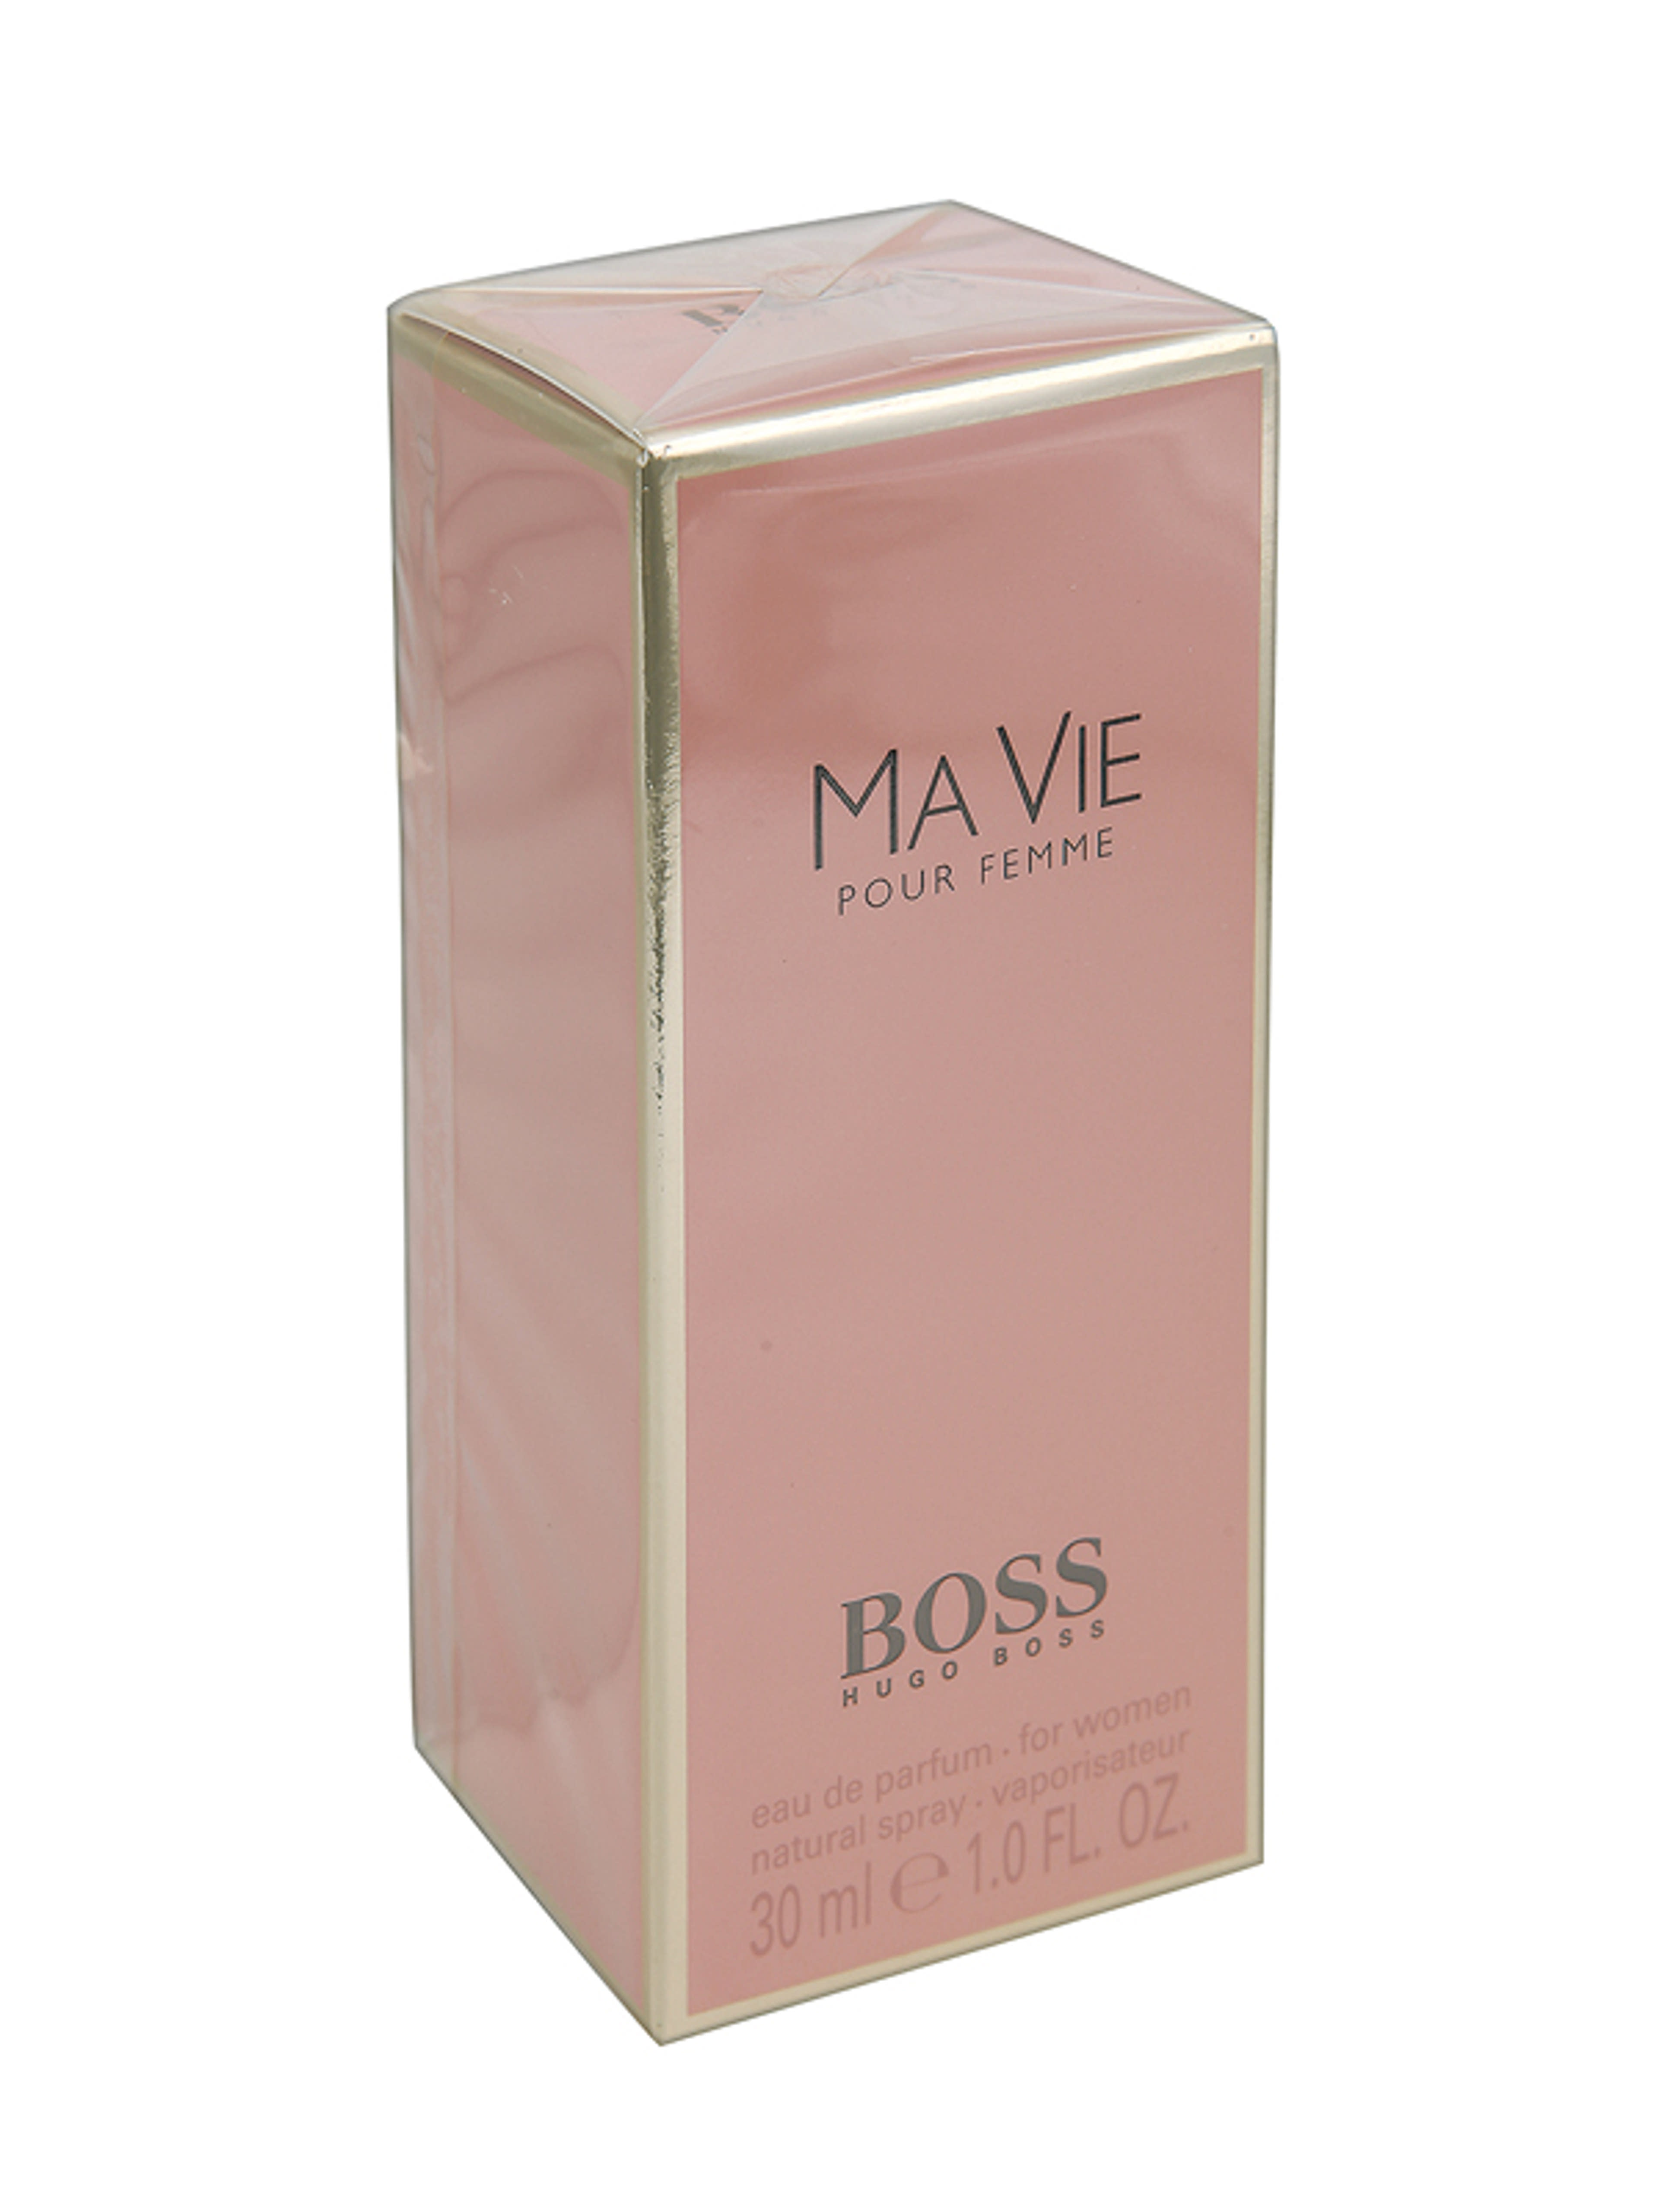 Hugo Boss Ma Via Pour Femme női Eau de Parfum - 30 ml-1